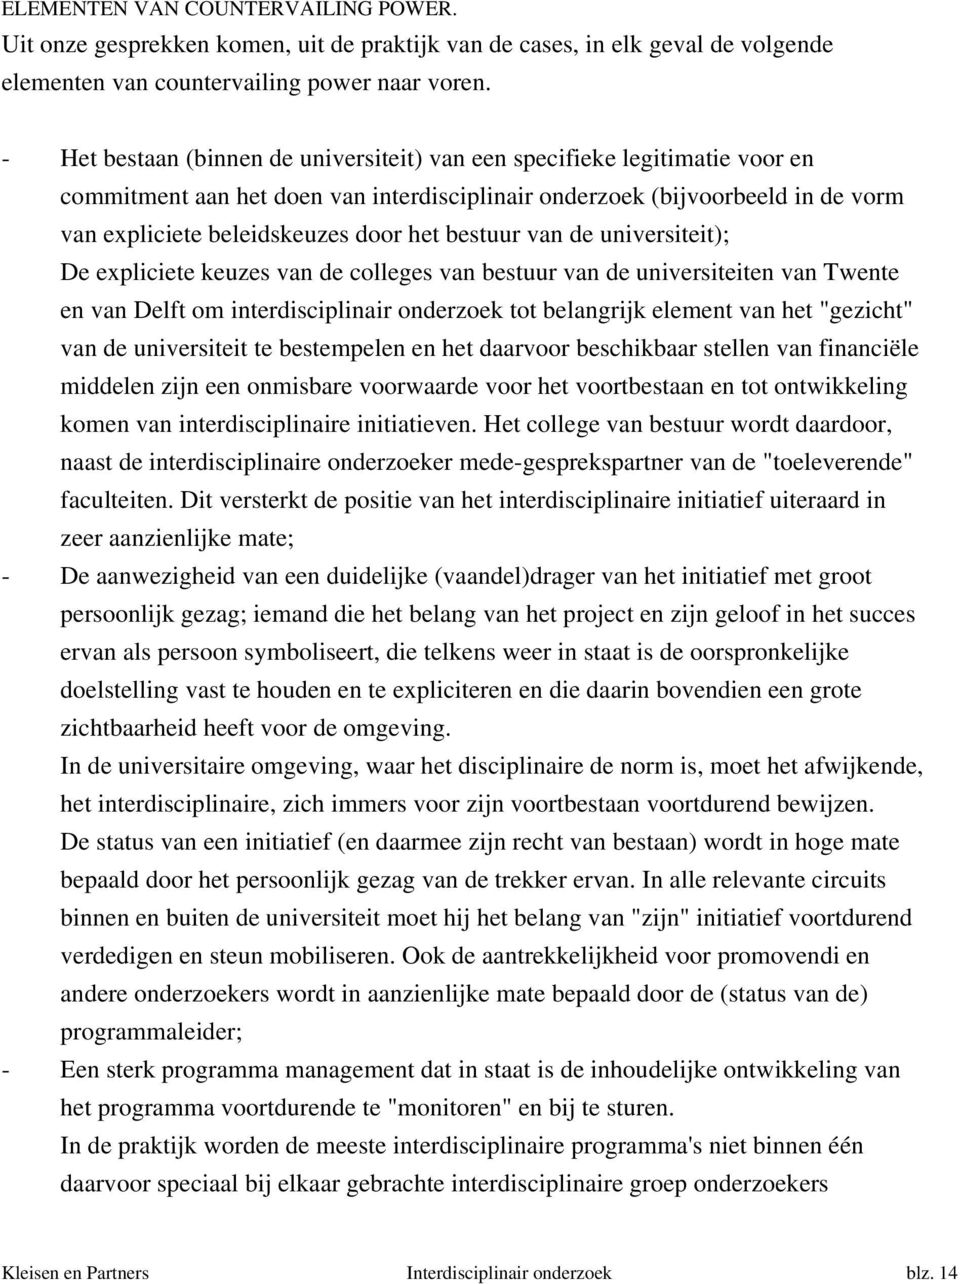 bestuur van de universiteit); De expliciete keuzes van de colleges van bestuur van de universiteiten van Twente en van Delft om interdisciplinair onderzoek tot belangrijk element van het "gezicht"